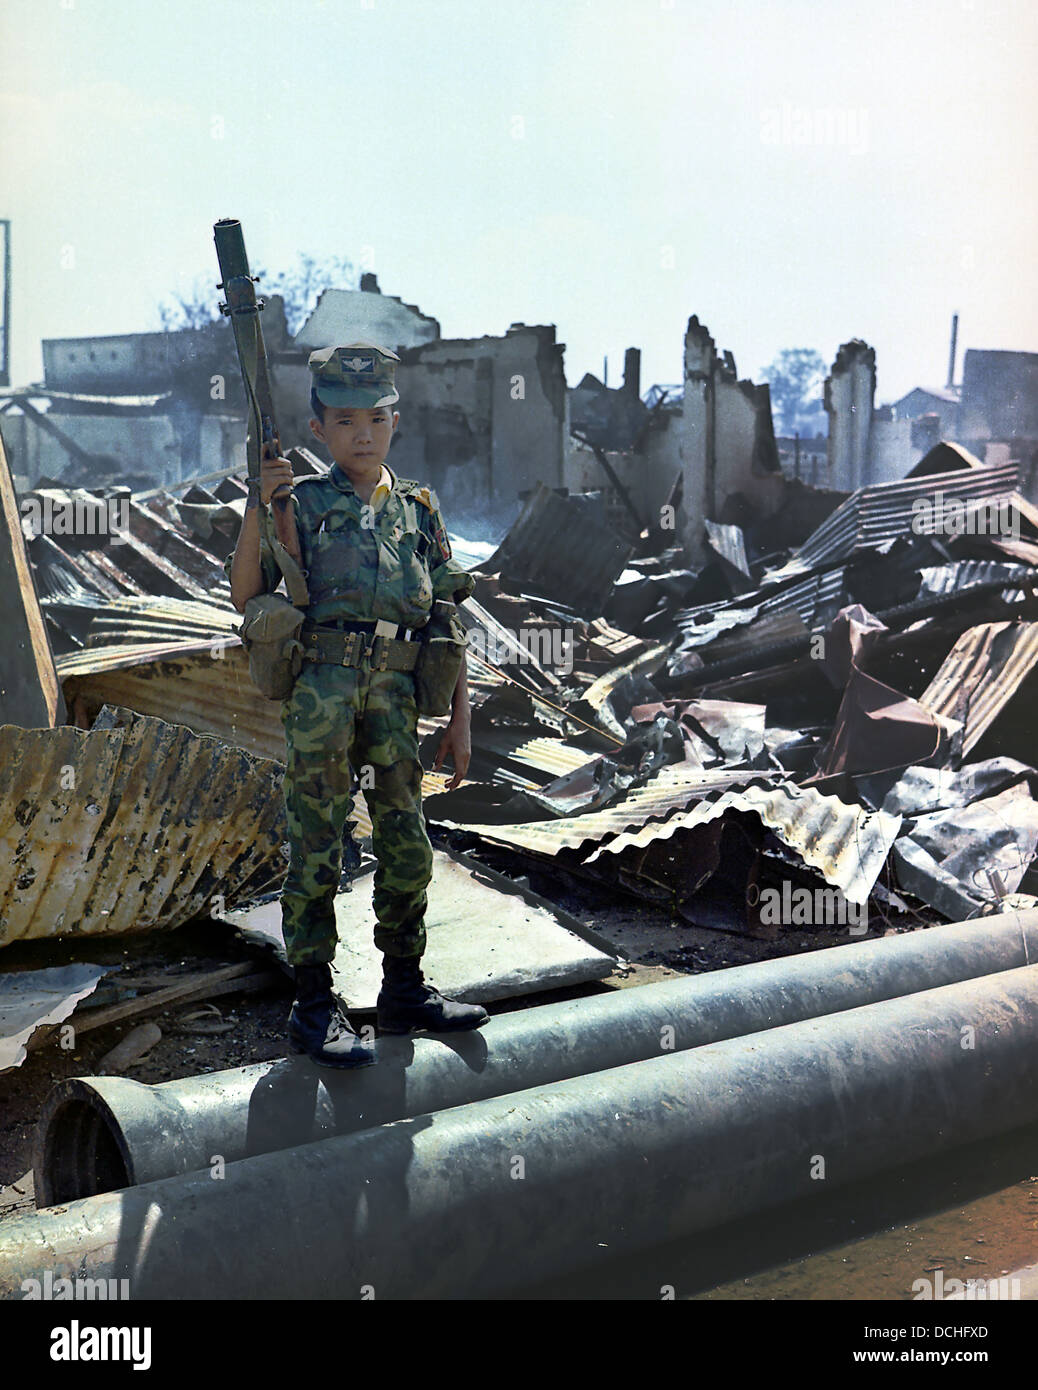 Kind vietnamesische ARVN Airborne Trooper, "von der Airborne Division mit einem Granatwerfer M-79 angenommen worden war". Stockfoto